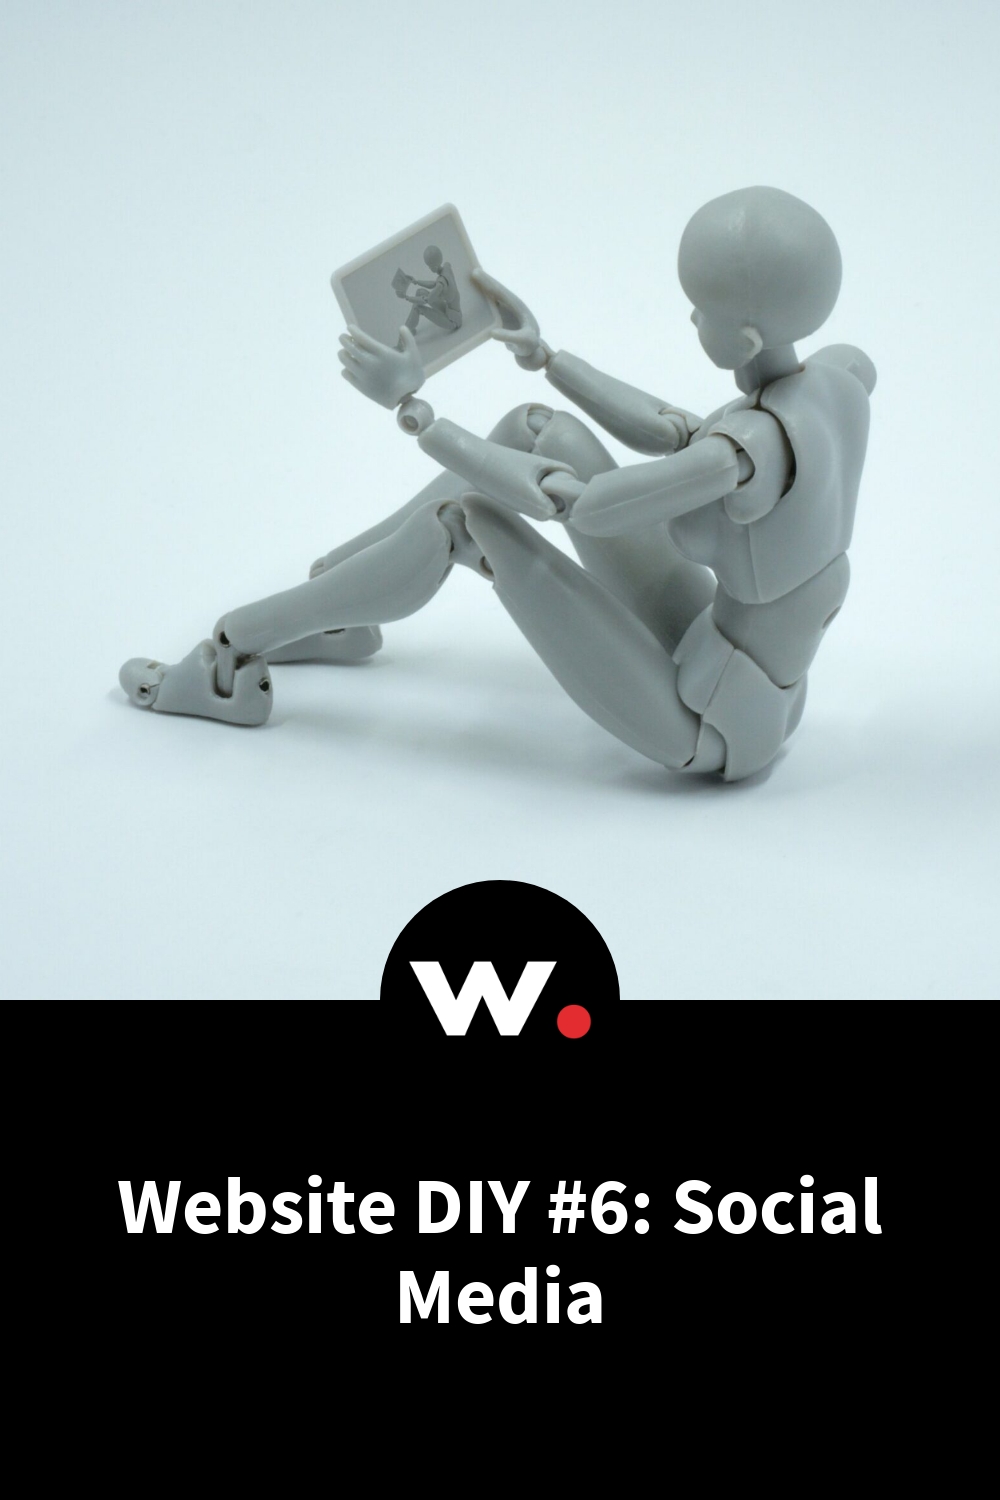 Website DIY #6: Social Media